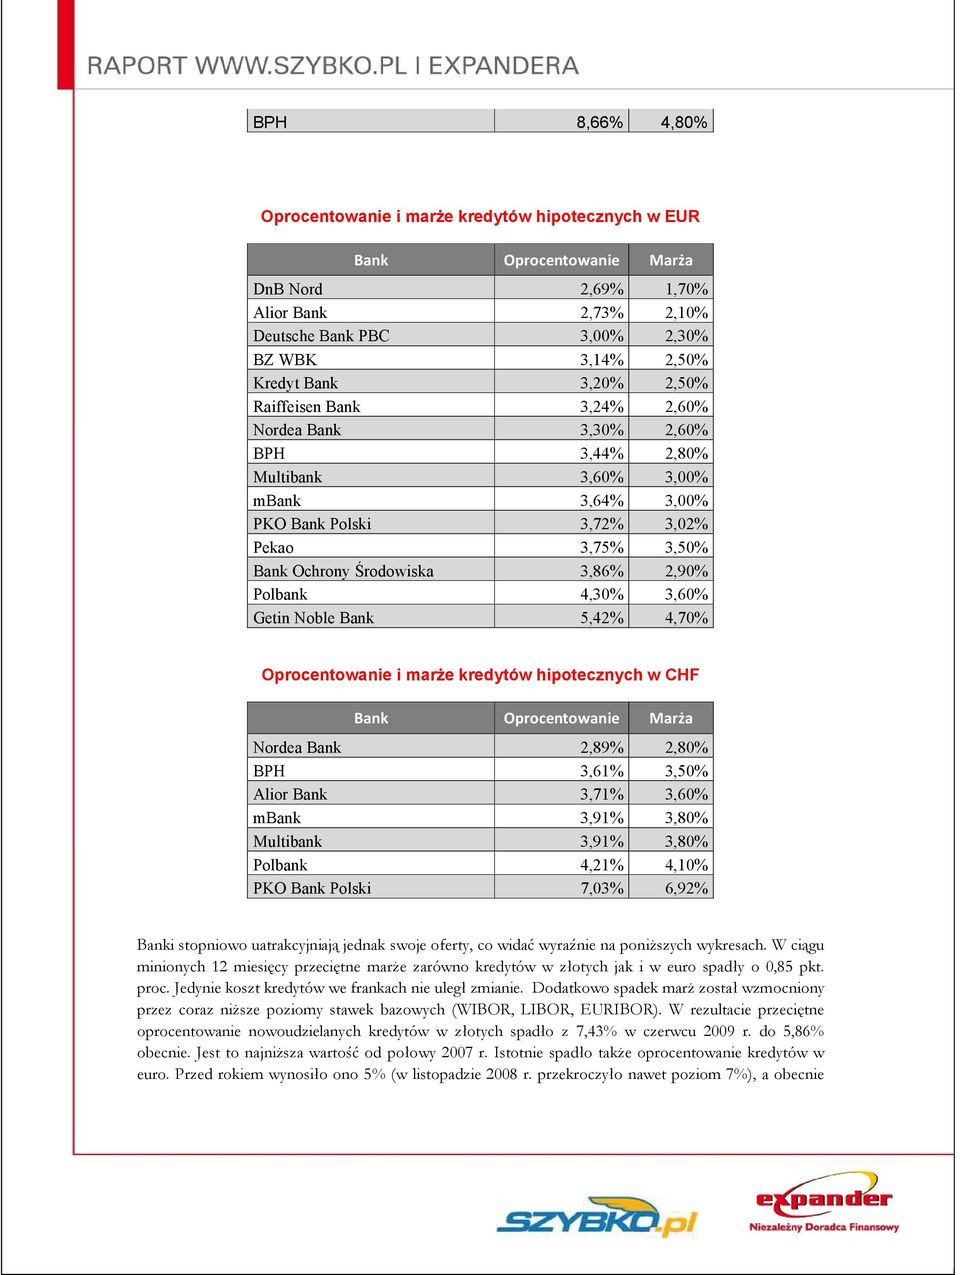 4,30% 3,60% Getin Noble Bank 5,42% 4,70% Oprocentowanie i marże kredytów hipotecznych w CHF Nordea Bank 2,89% 2,80% BPH 3,61% 3,50% Alior Bank 3,71% 3,60% mbank 3,91% 3,80% Multibank 3,91% 3,80%